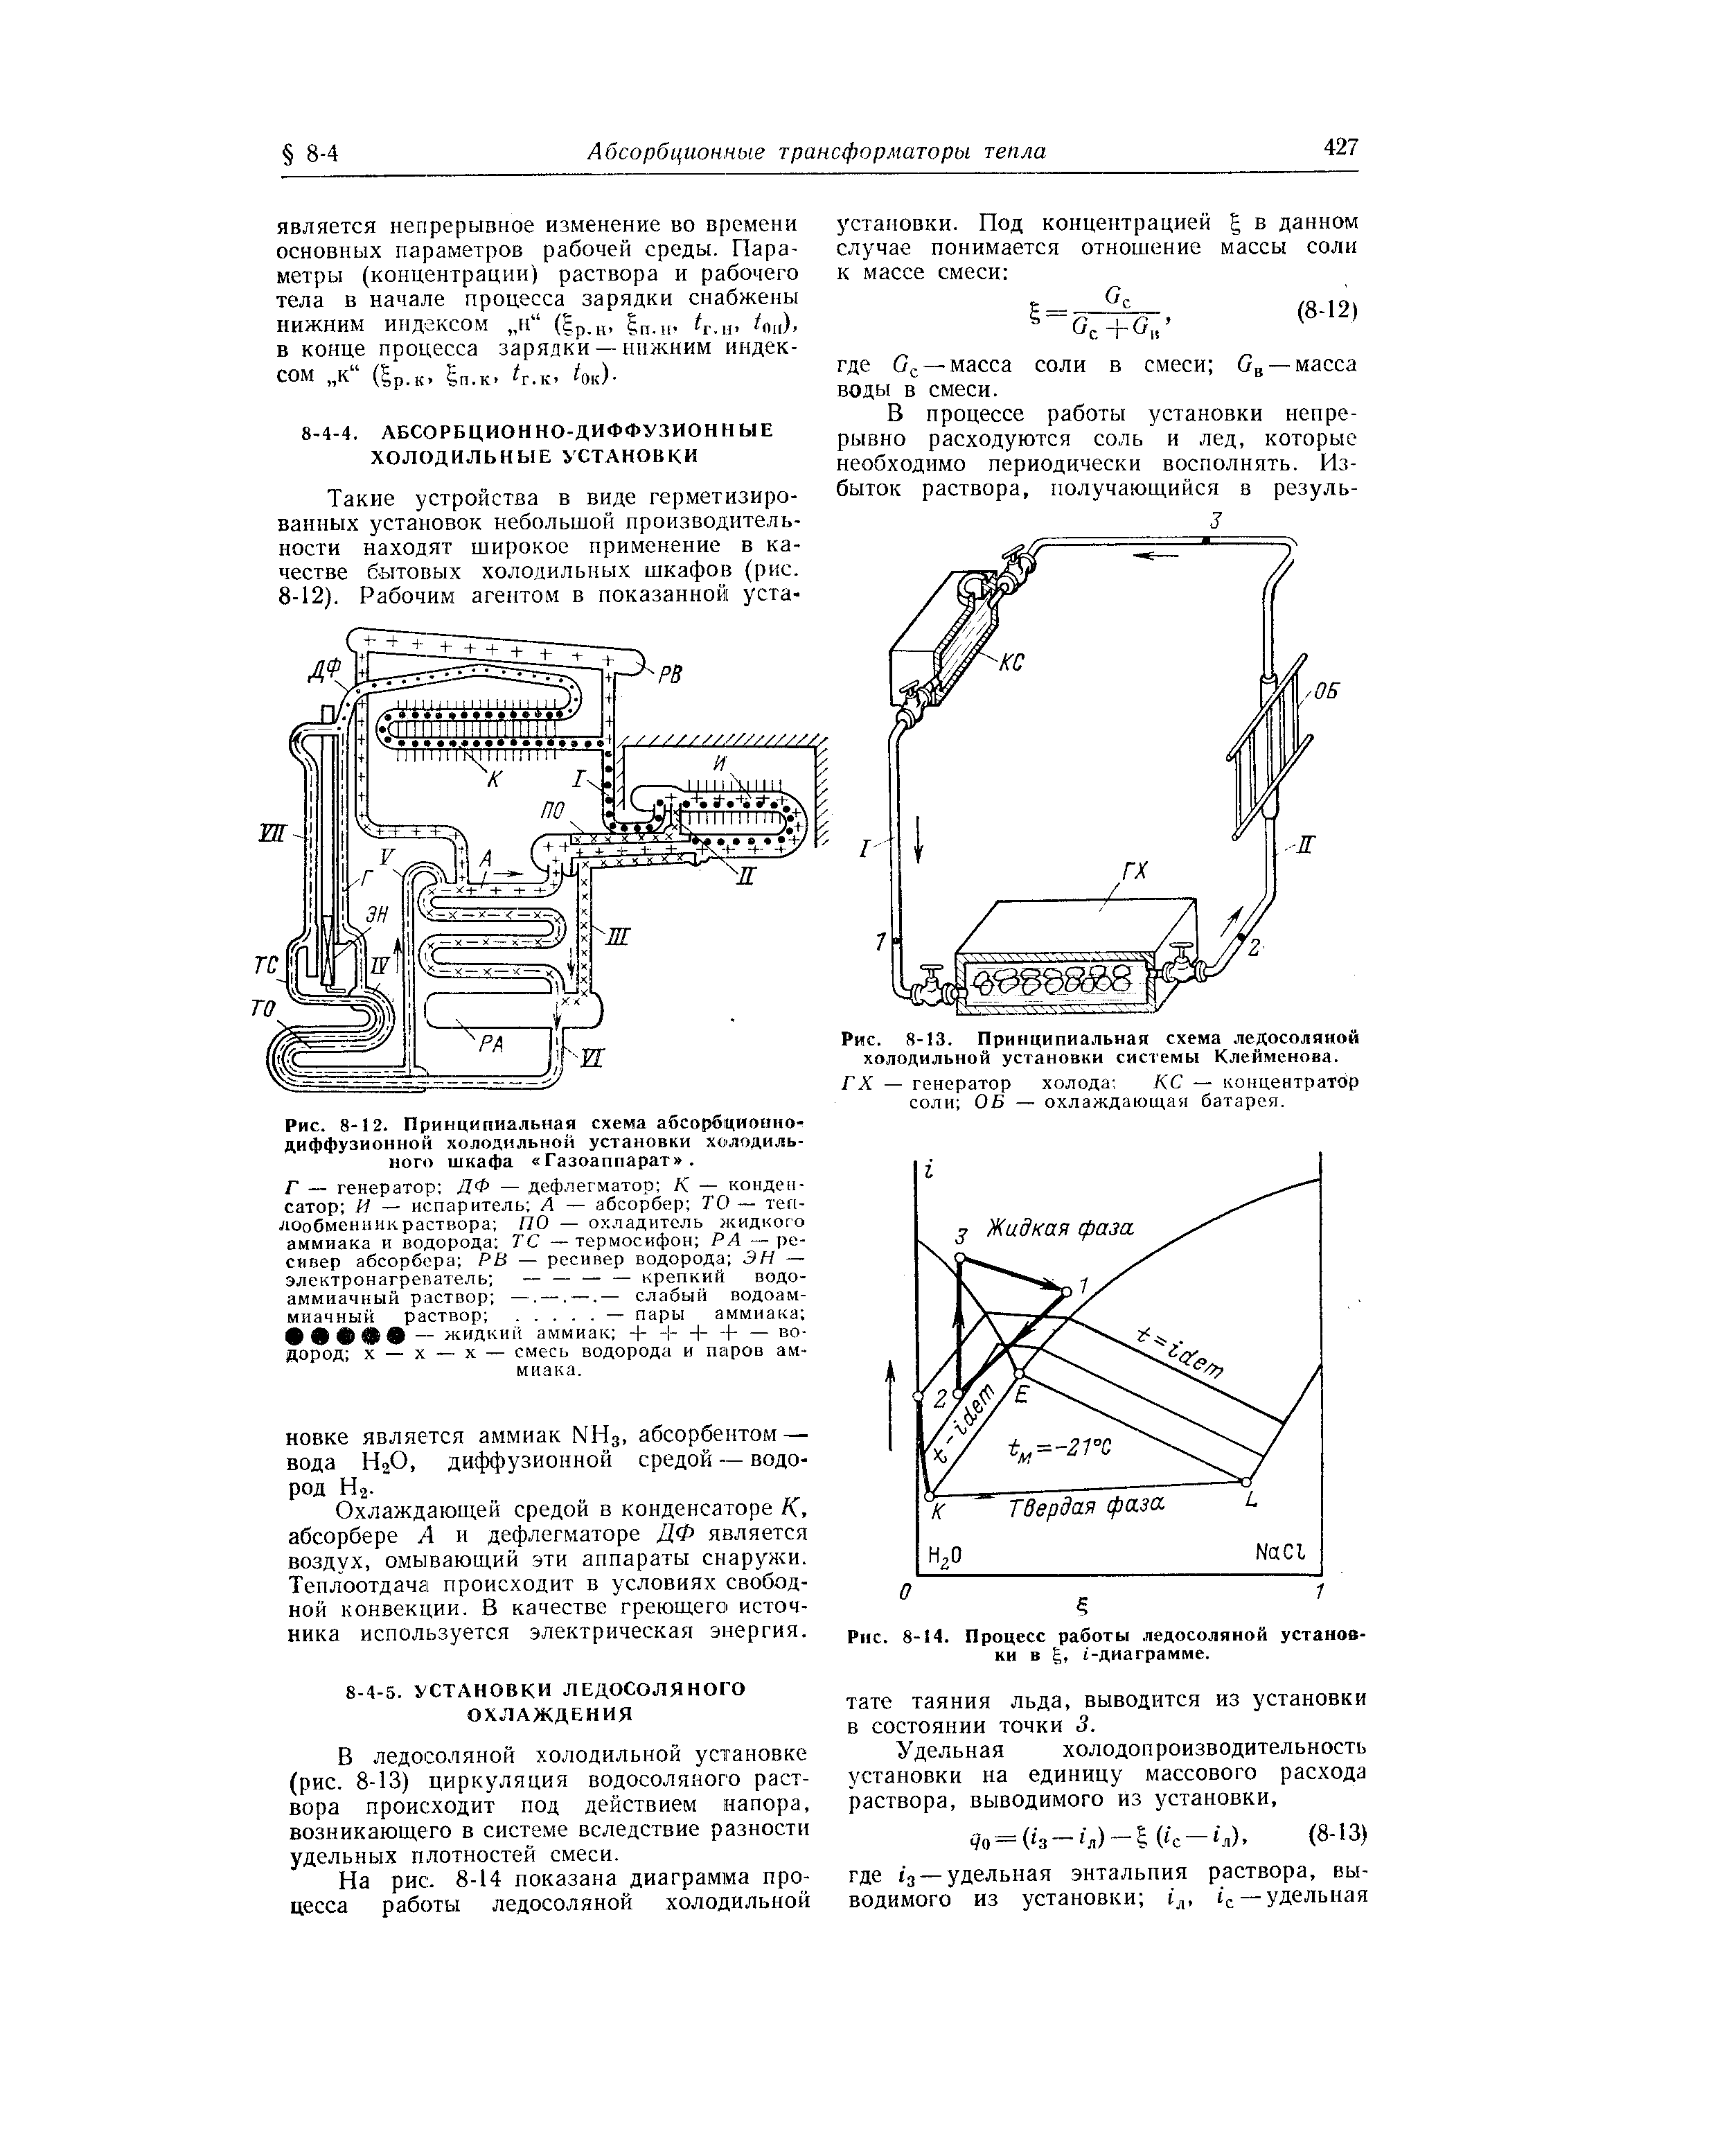 Рис. 8-13. Принципиальная схема ледосоляной холодильной установки системы Клейменова.
